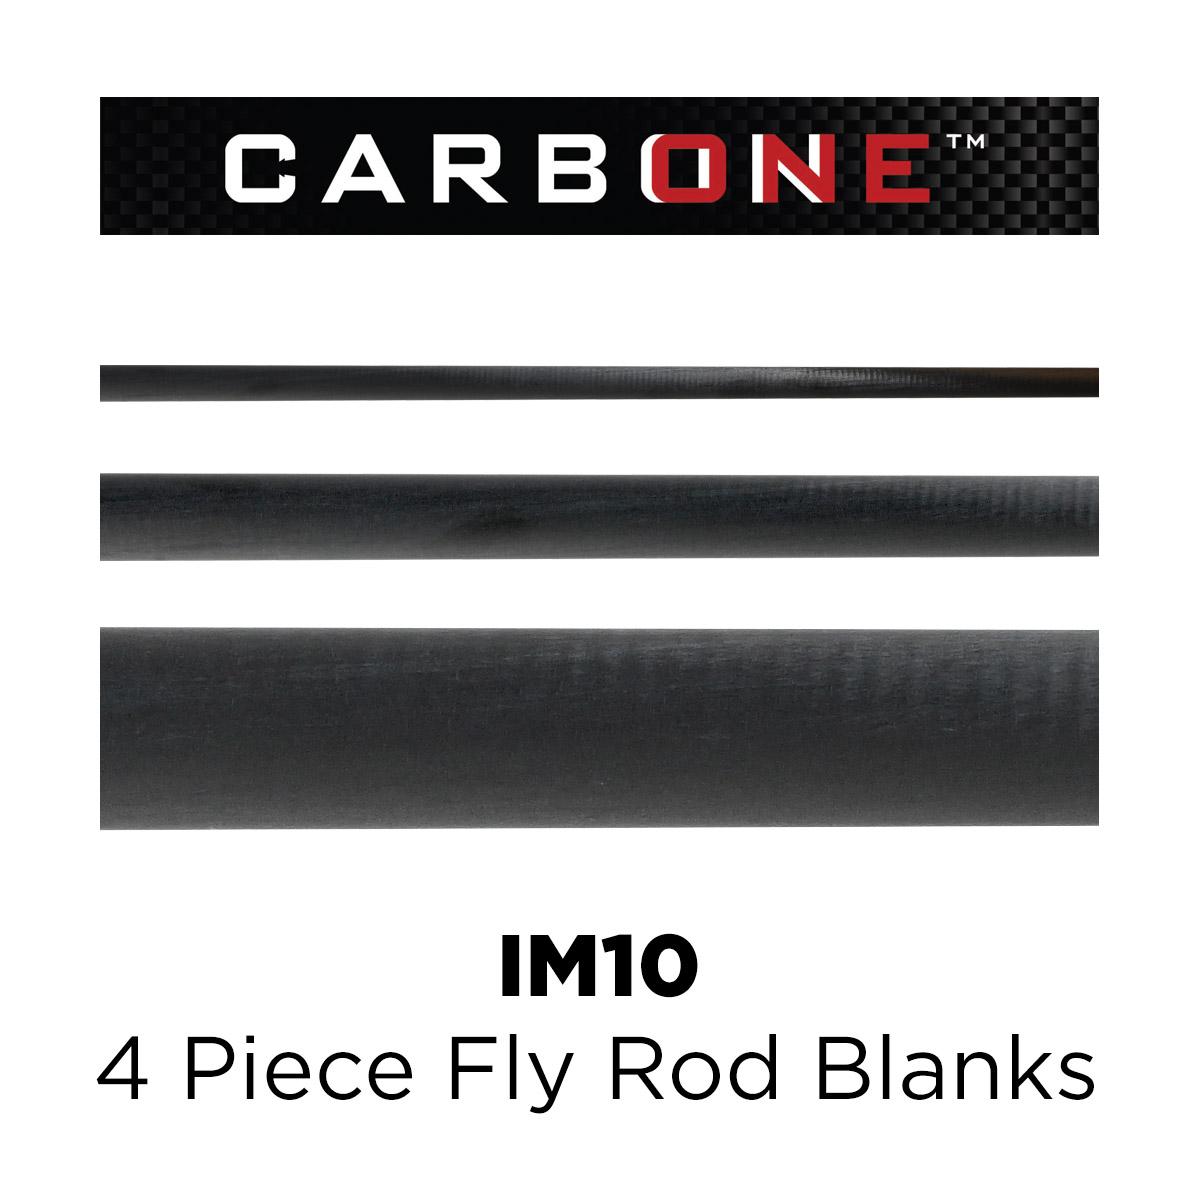 Carbon One IM10, 4 Piece Fly Rod Blanks